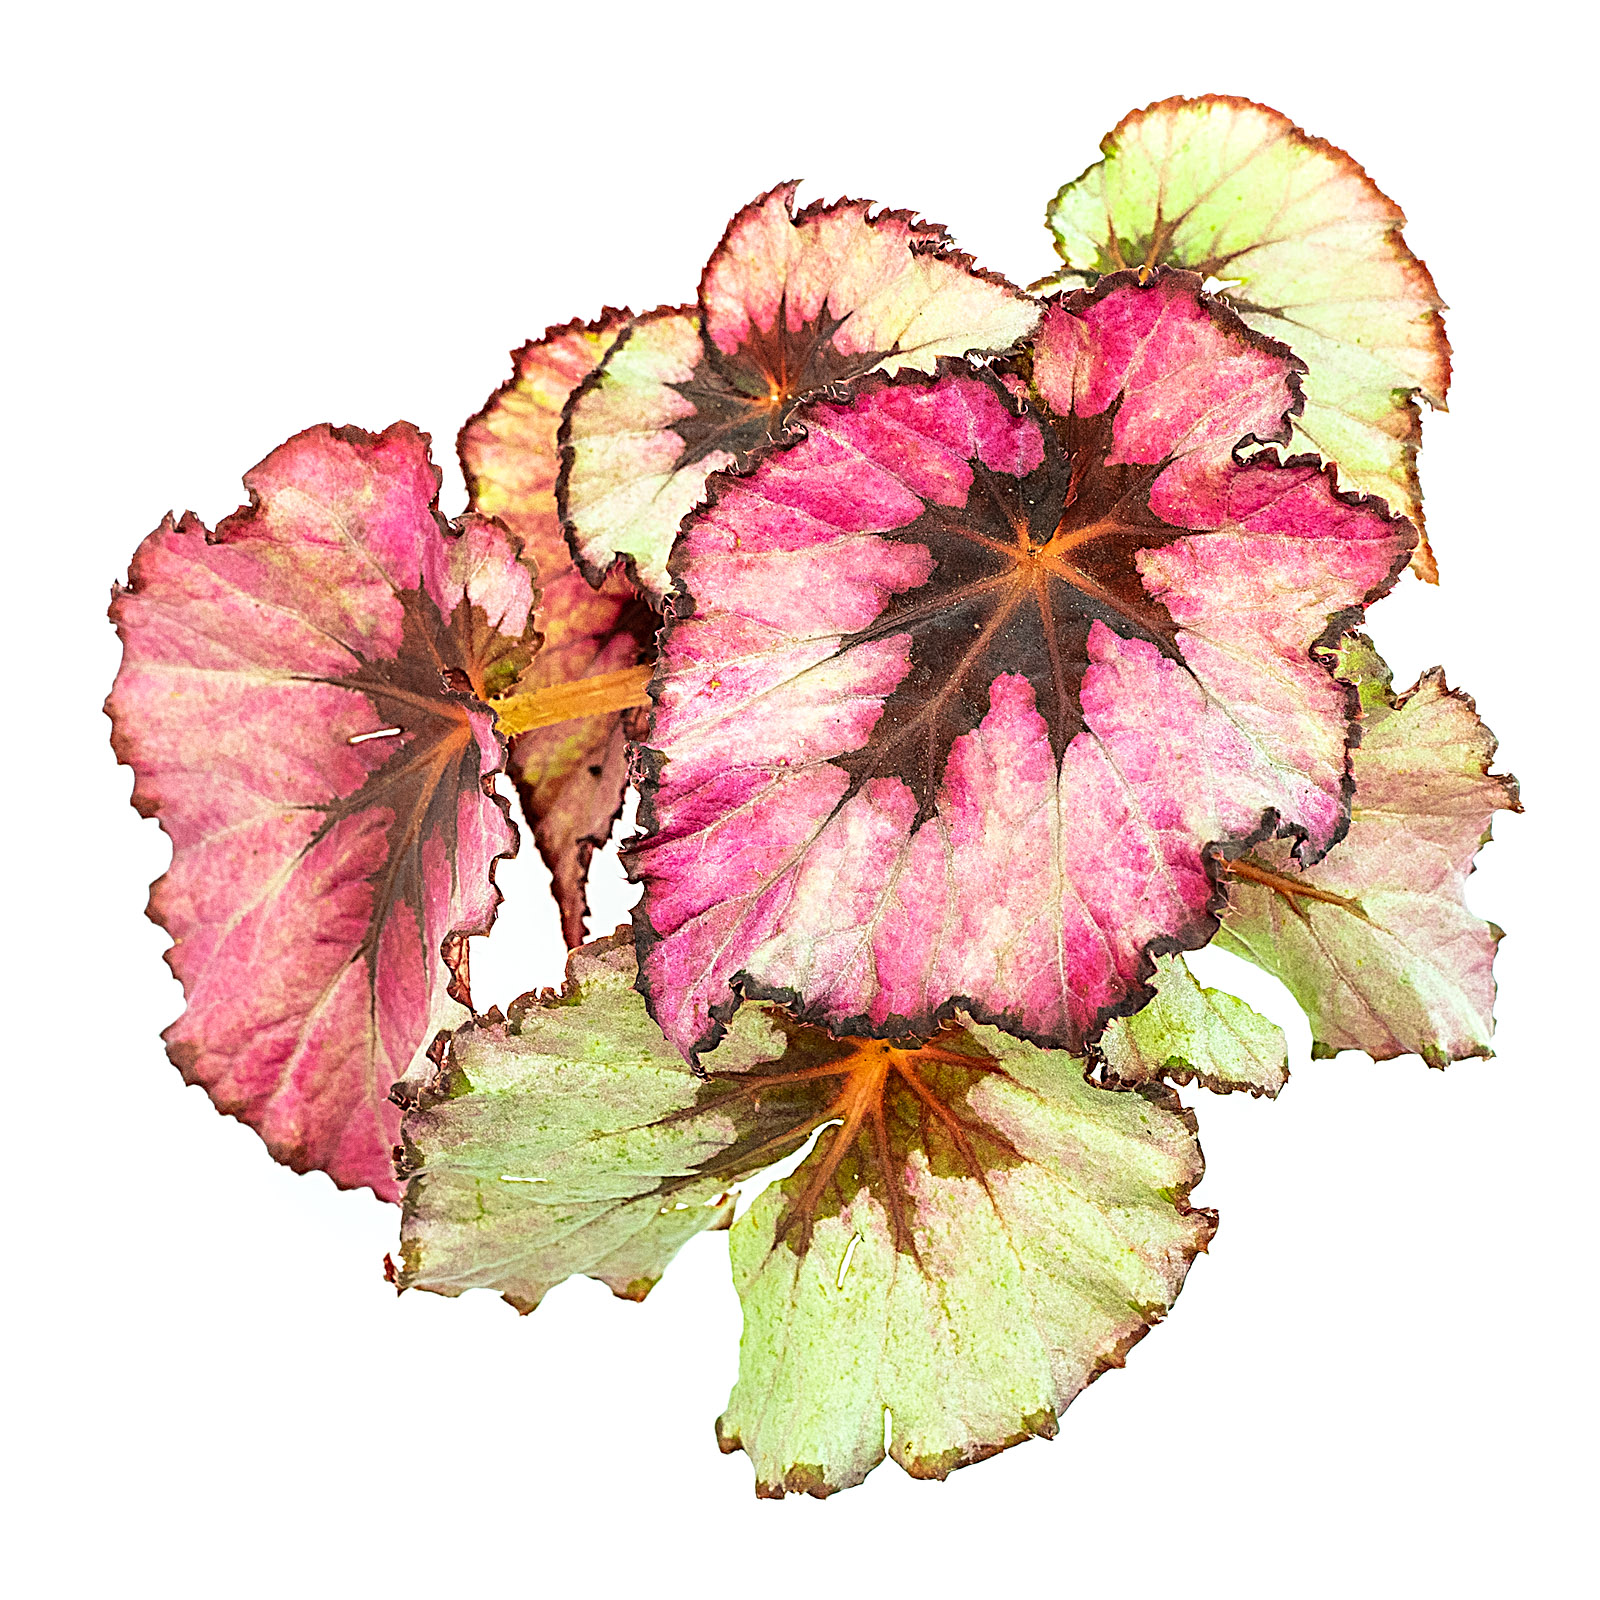 Blattbegonie Begonia, die ideale Terrarienpflanze | Der Terraristikladen